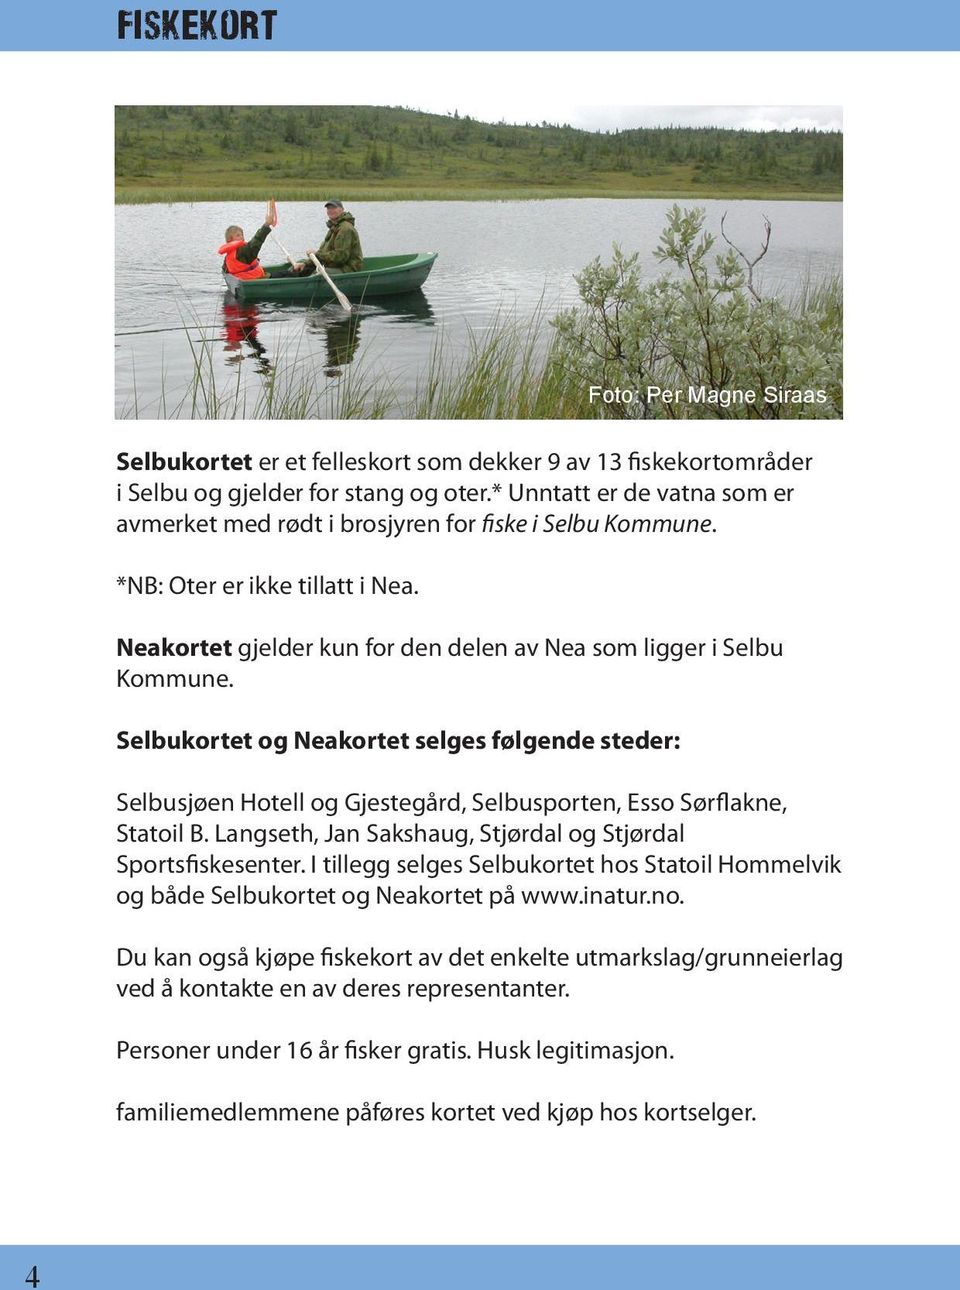 Selbukortet og Neakortet selges følgende steder: Selbusjøen Hotell og Gjestegård, Selbusporten, Esso Sørflakne, Statoil B. Langseth, Jan Sakshaug, Stjørdal og Stjørdal Sportsfiskesenter.